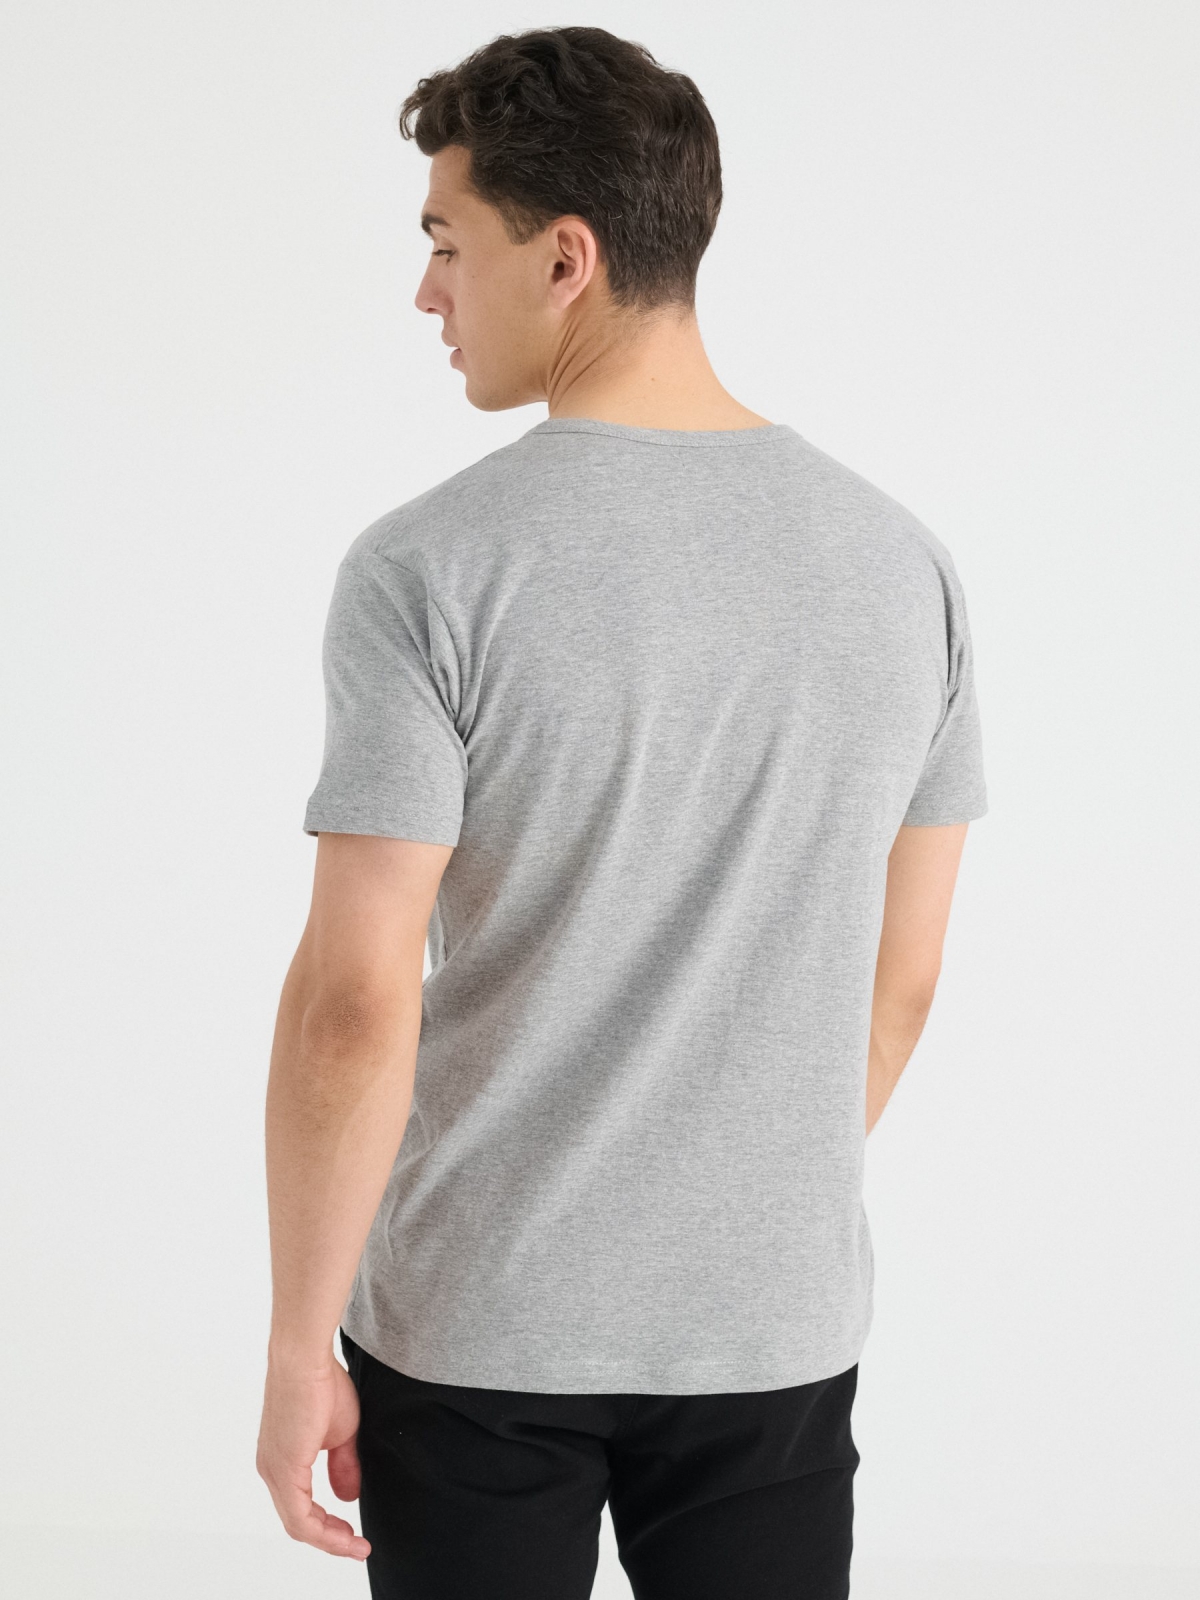 Camiseta cuello con botones gris vista media trasera